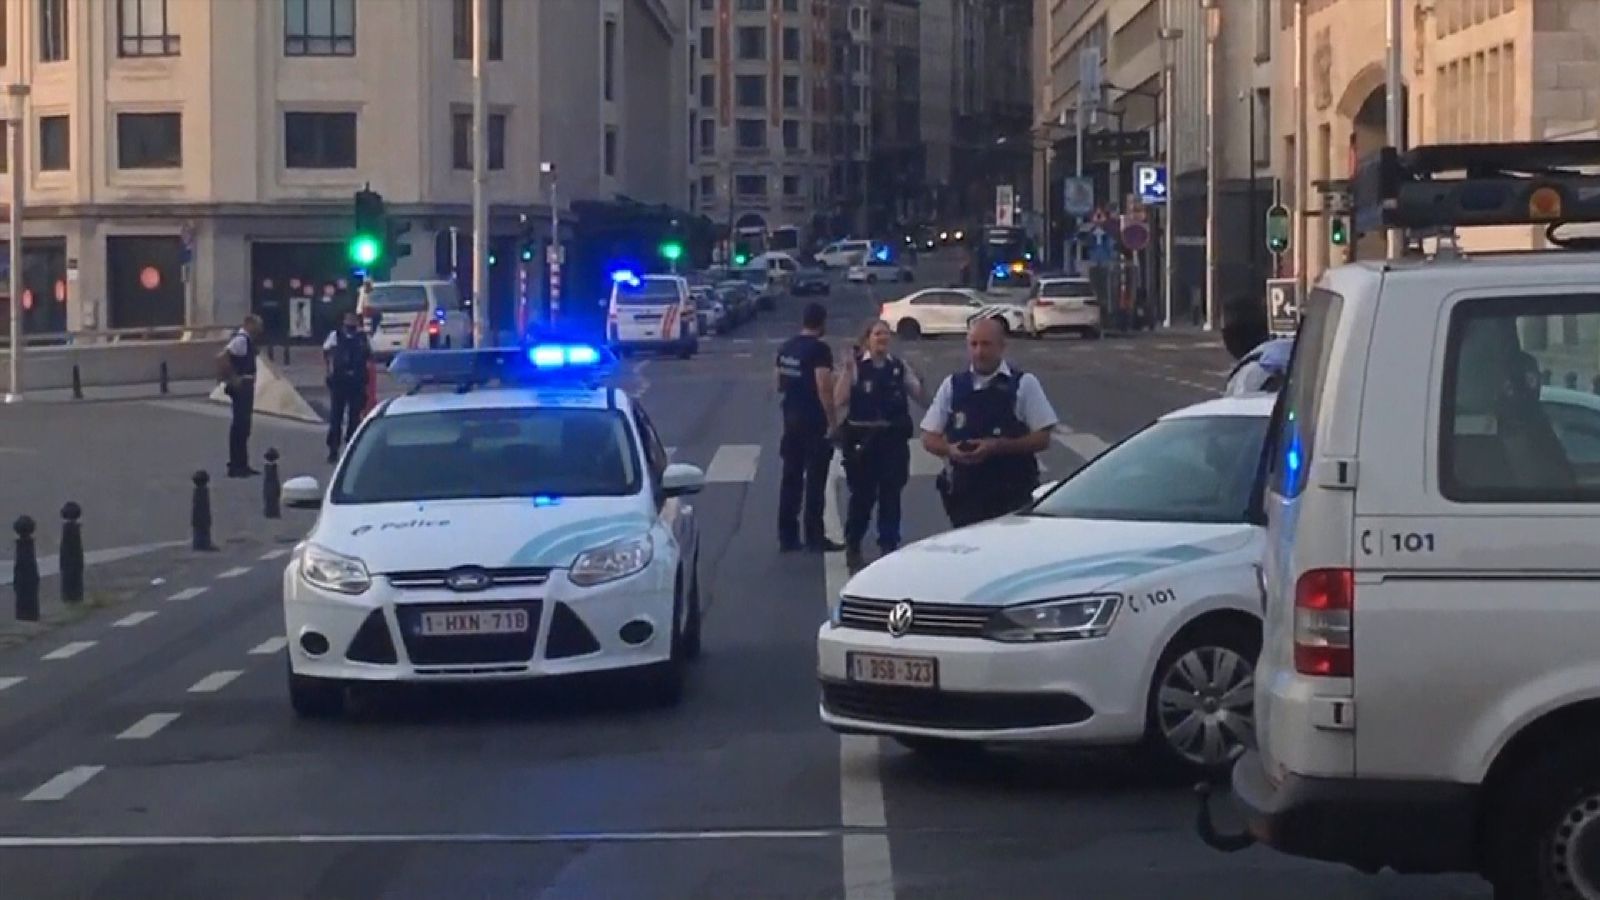 Officials open terror investigation in Champs-Elysées vehicle collision 8cc81447299226f5c82df2b73e37743b4a3e94f79ff14a9e295ed902ec4bec4c_3982253